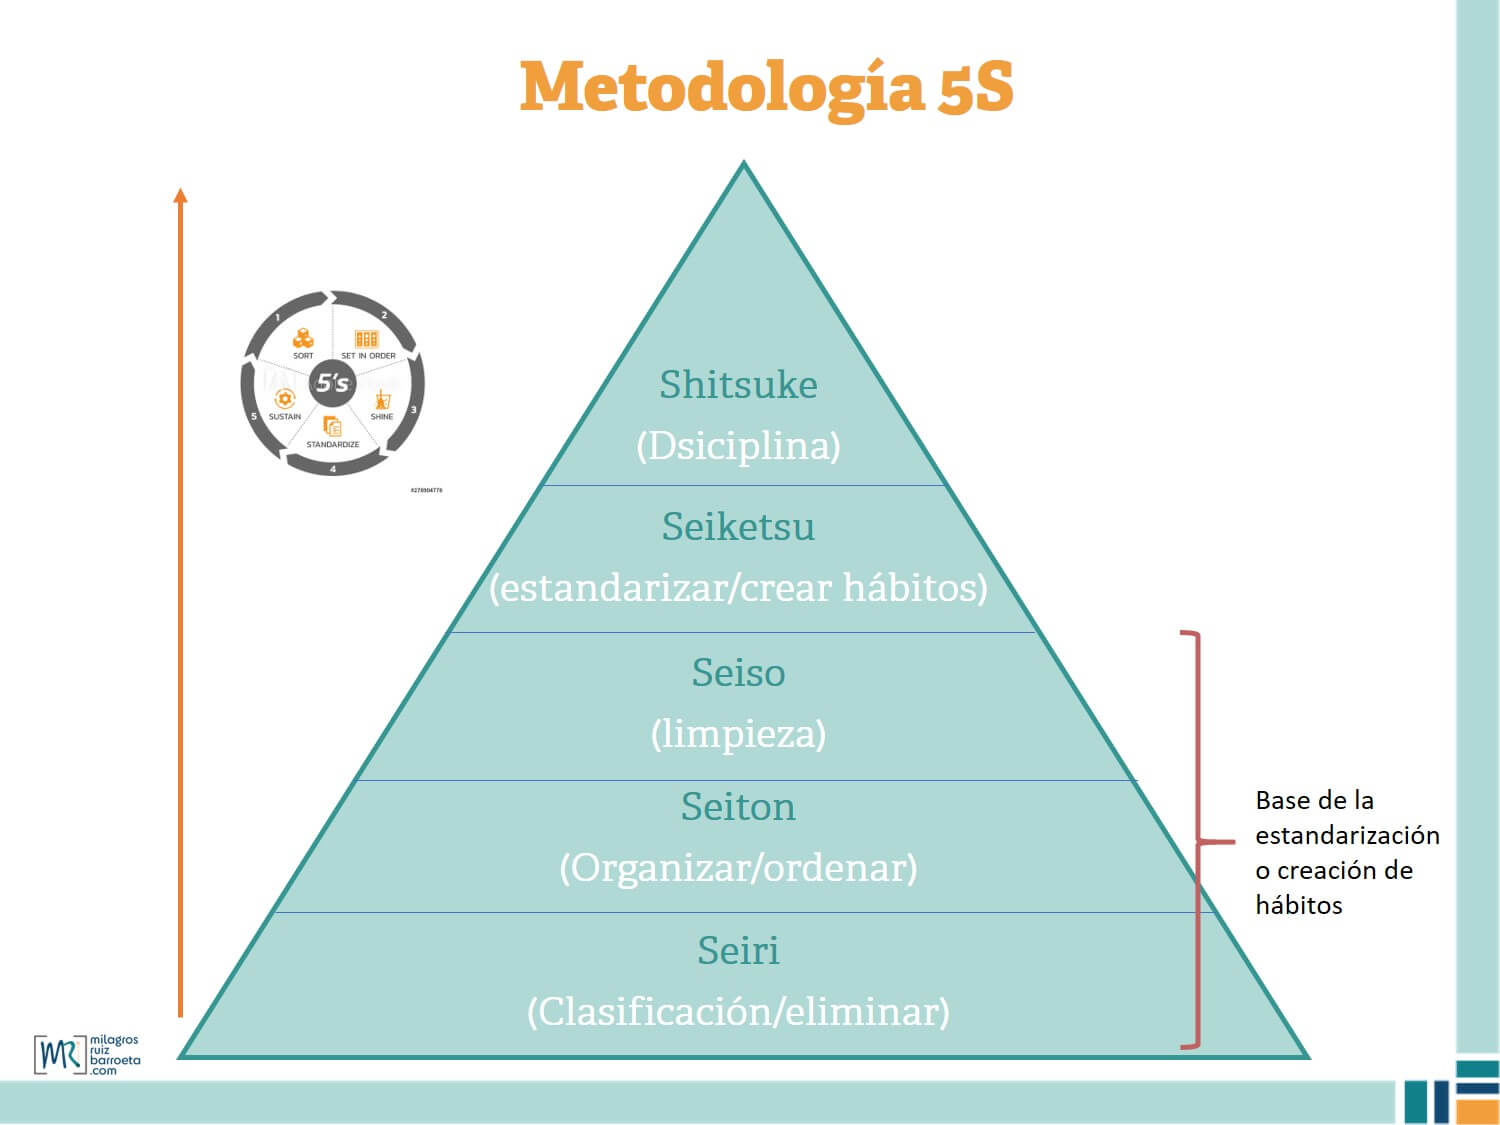 Metodología 5S, Qué y para qué sirve - Ruiz Barroeta Consultoria Estratégica